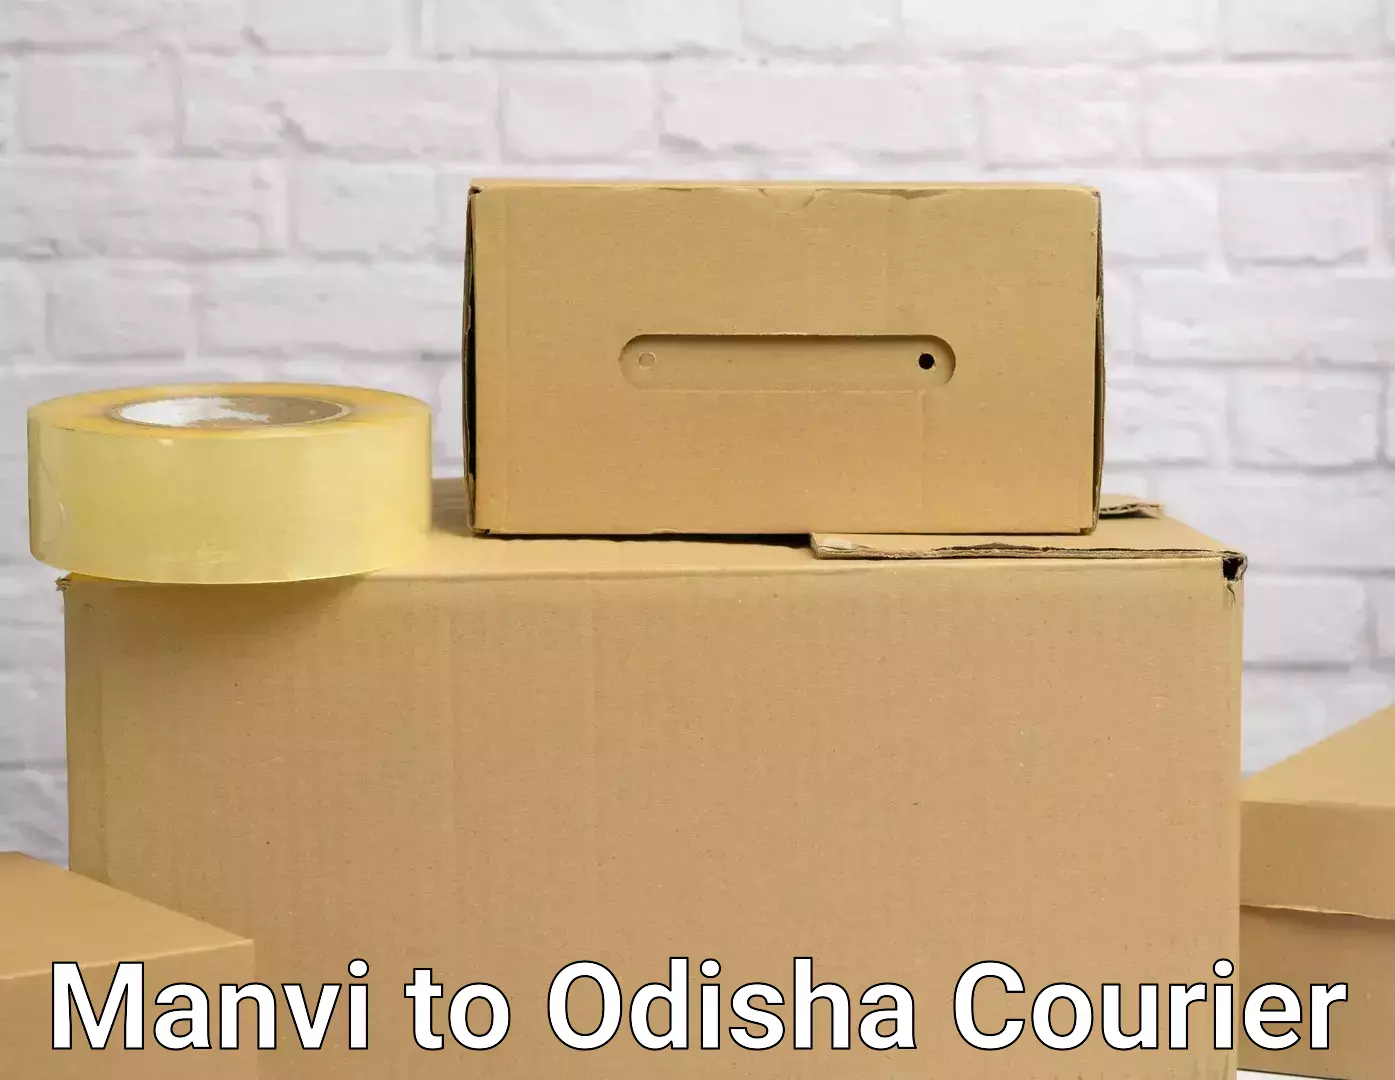 Furniture transport service Manvi to Odisha